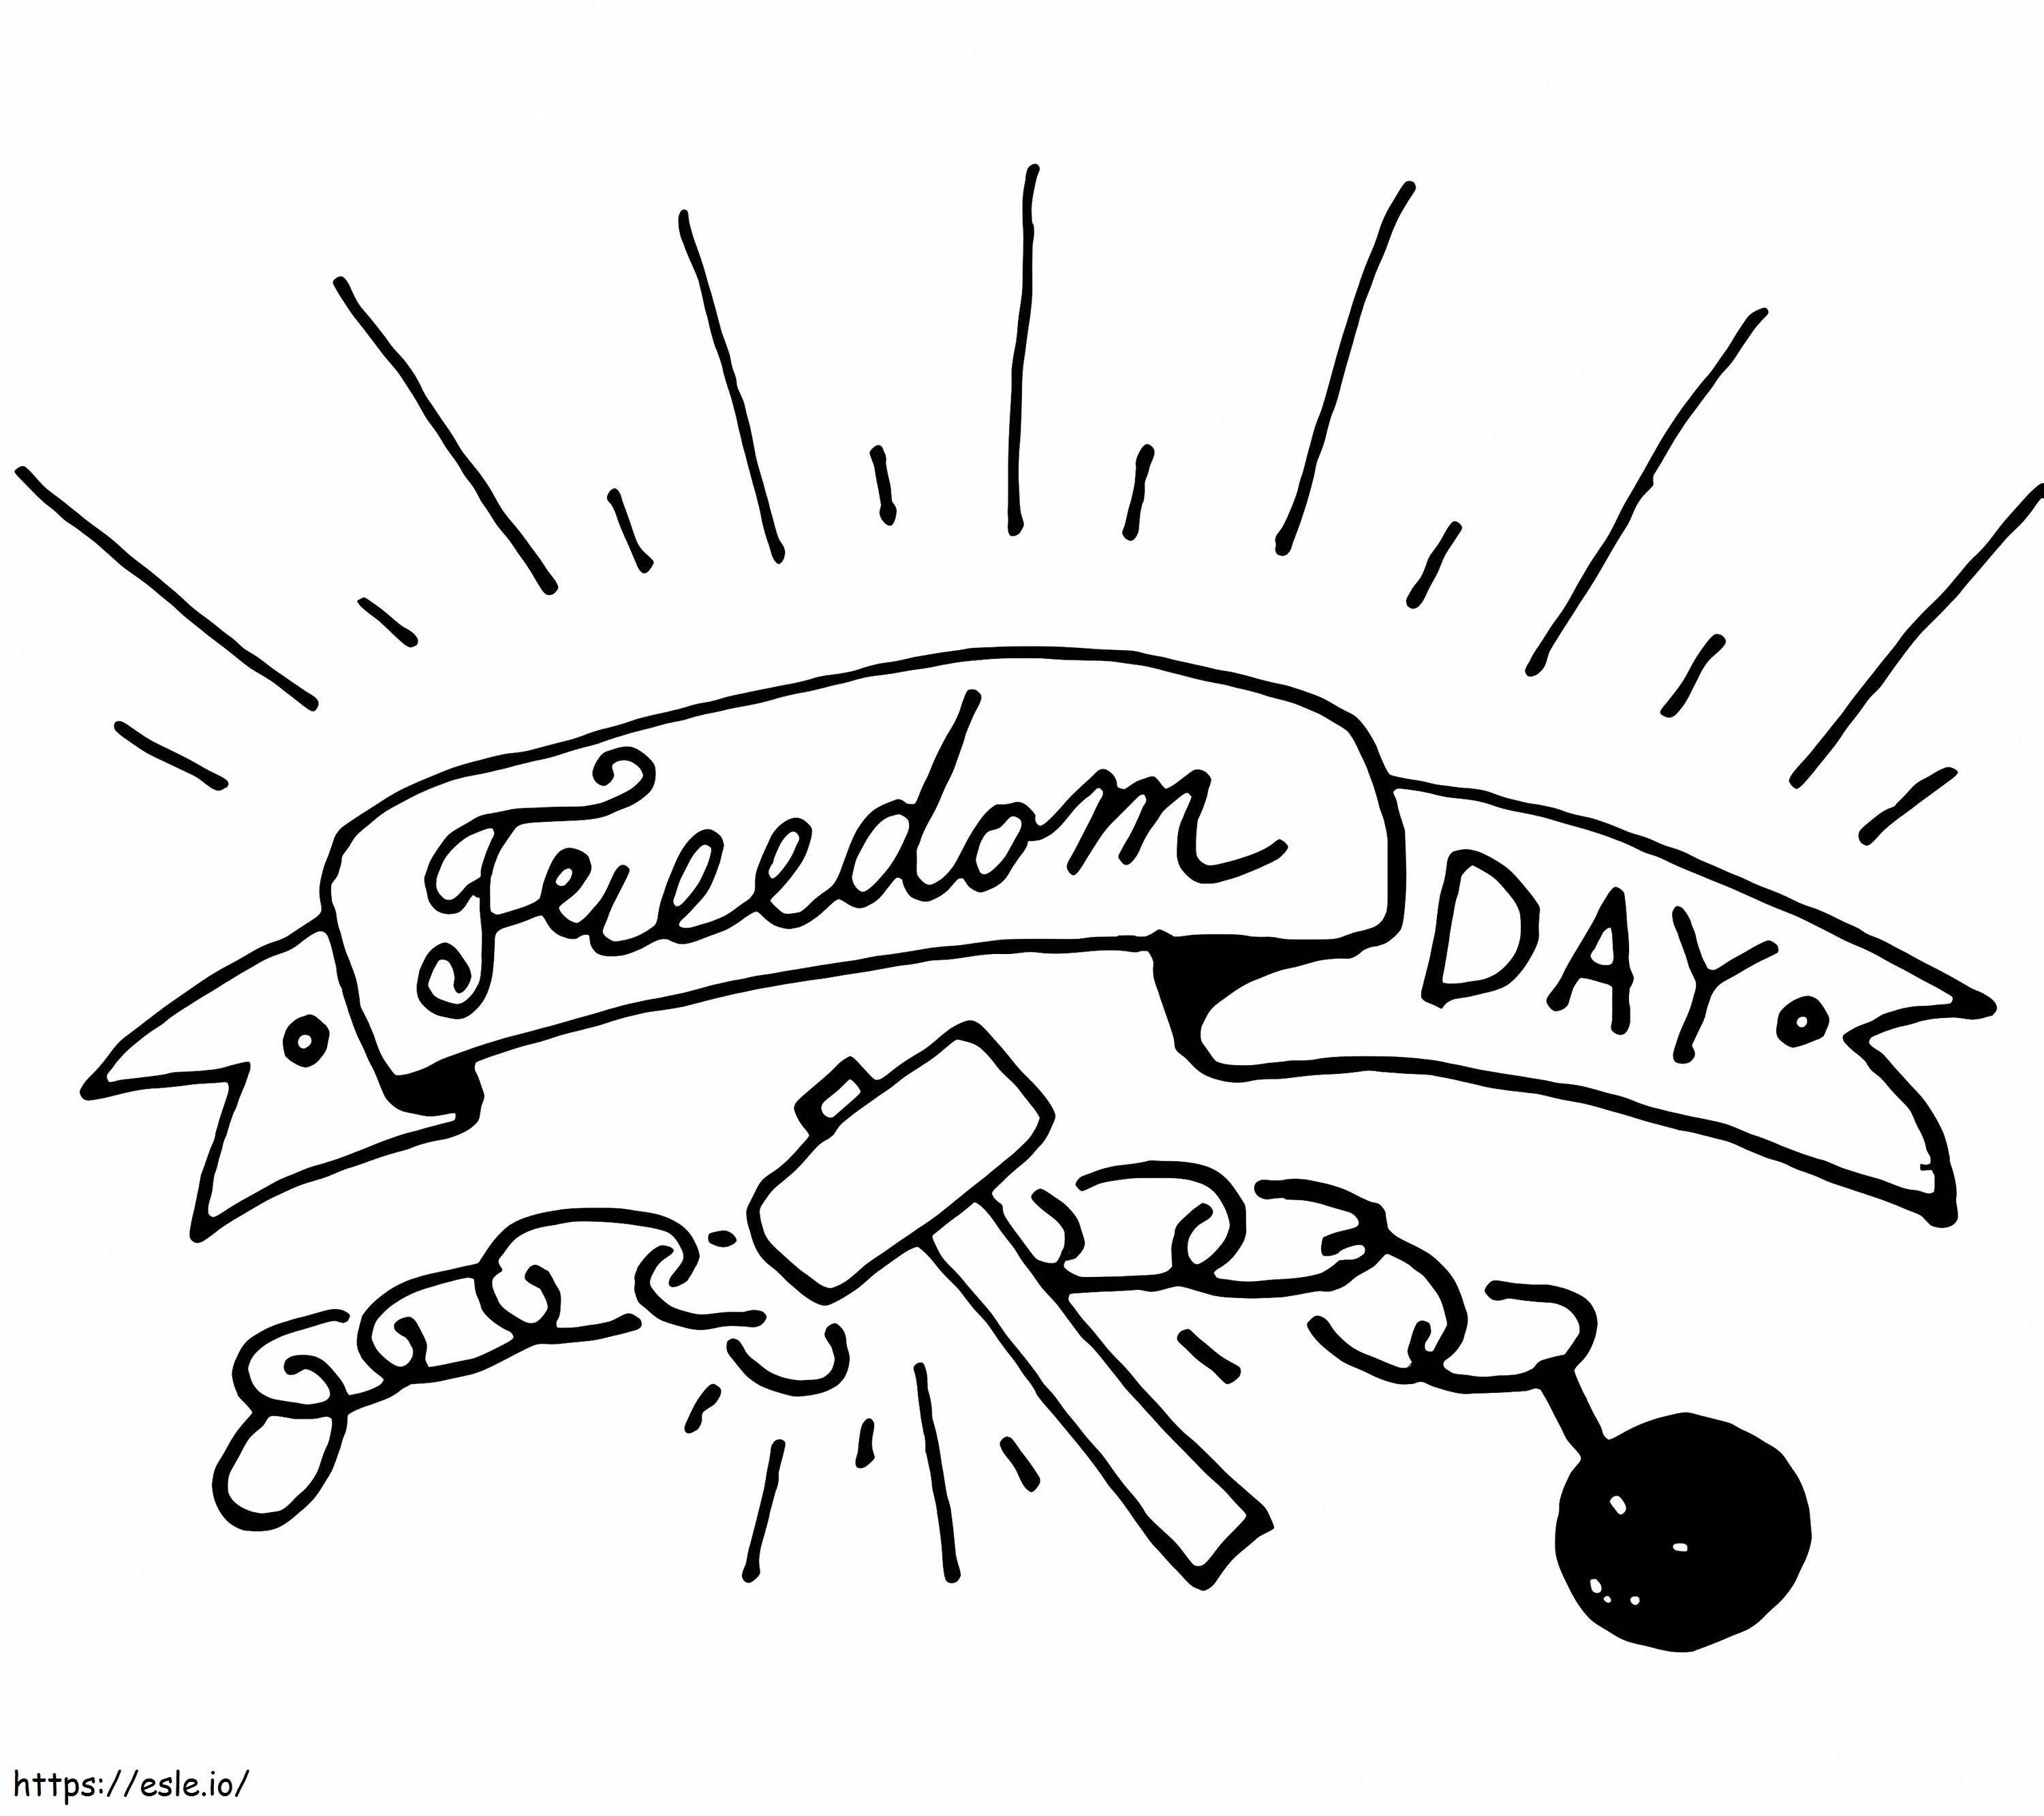 Junizehnter Tag der Freiheit ausmalbilder